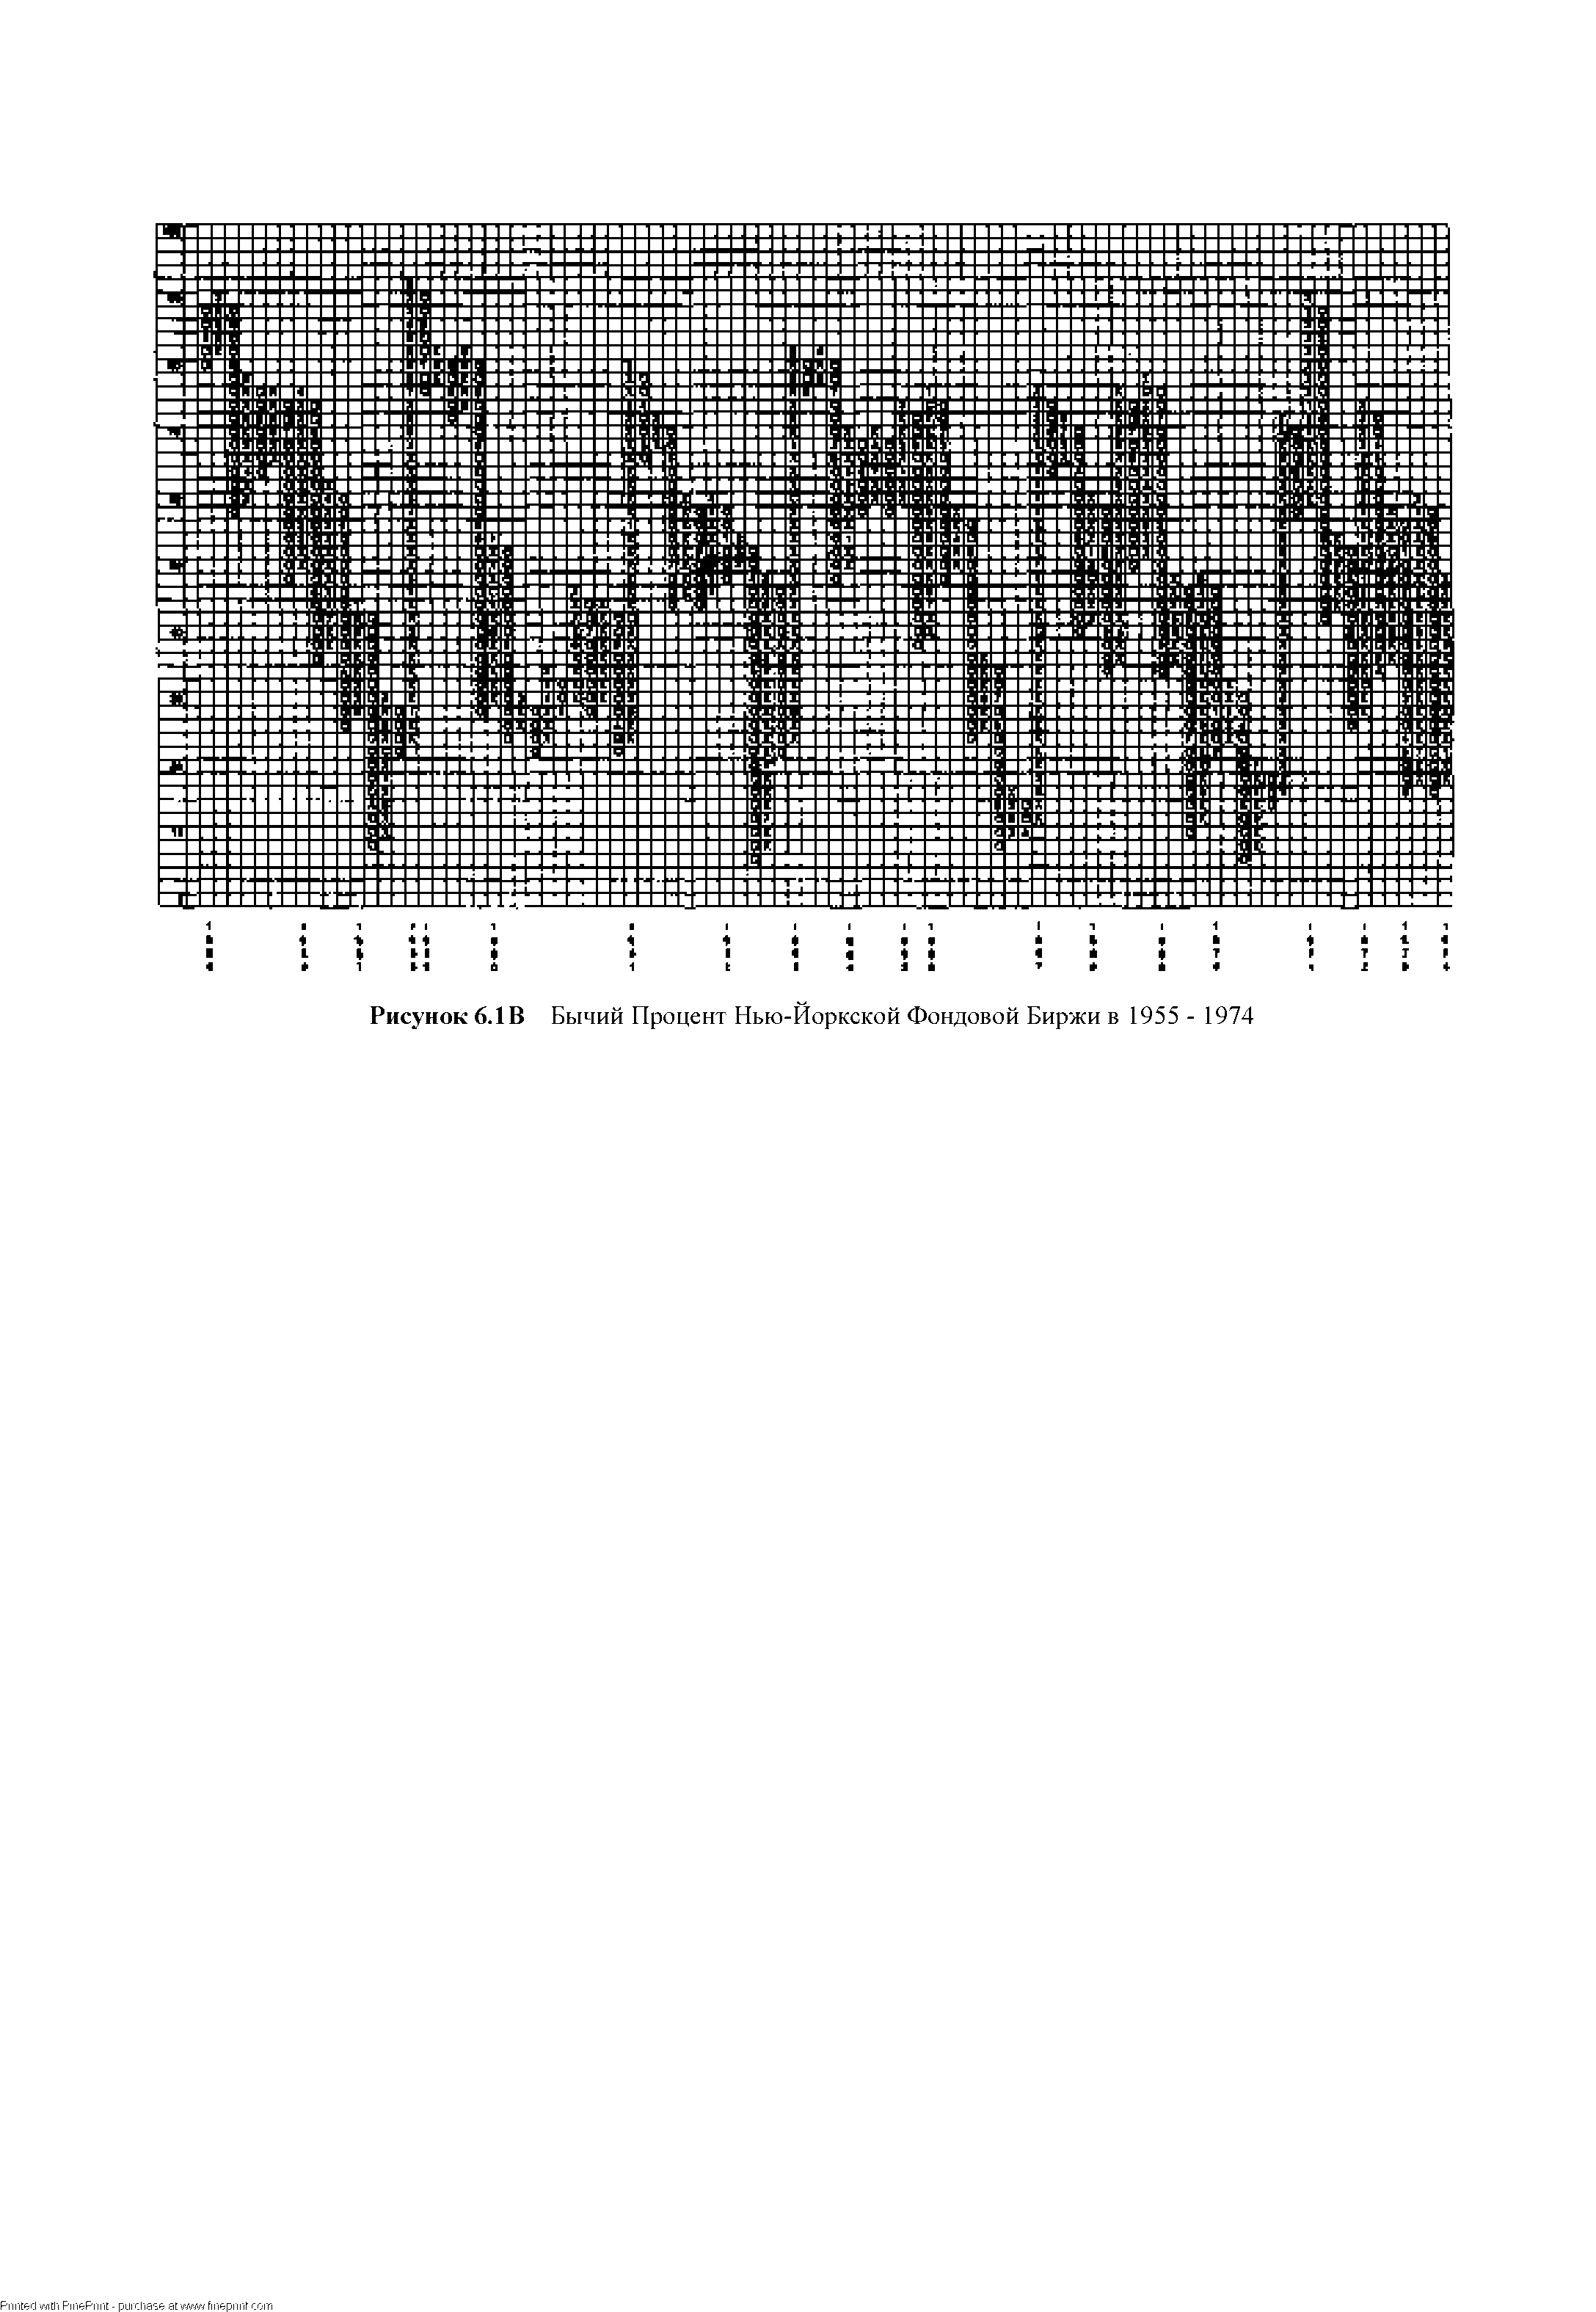 Рисунок 6.1В Бычий Процент Нью-Йоркской Фондовой Биржи в 1955 - 1974
